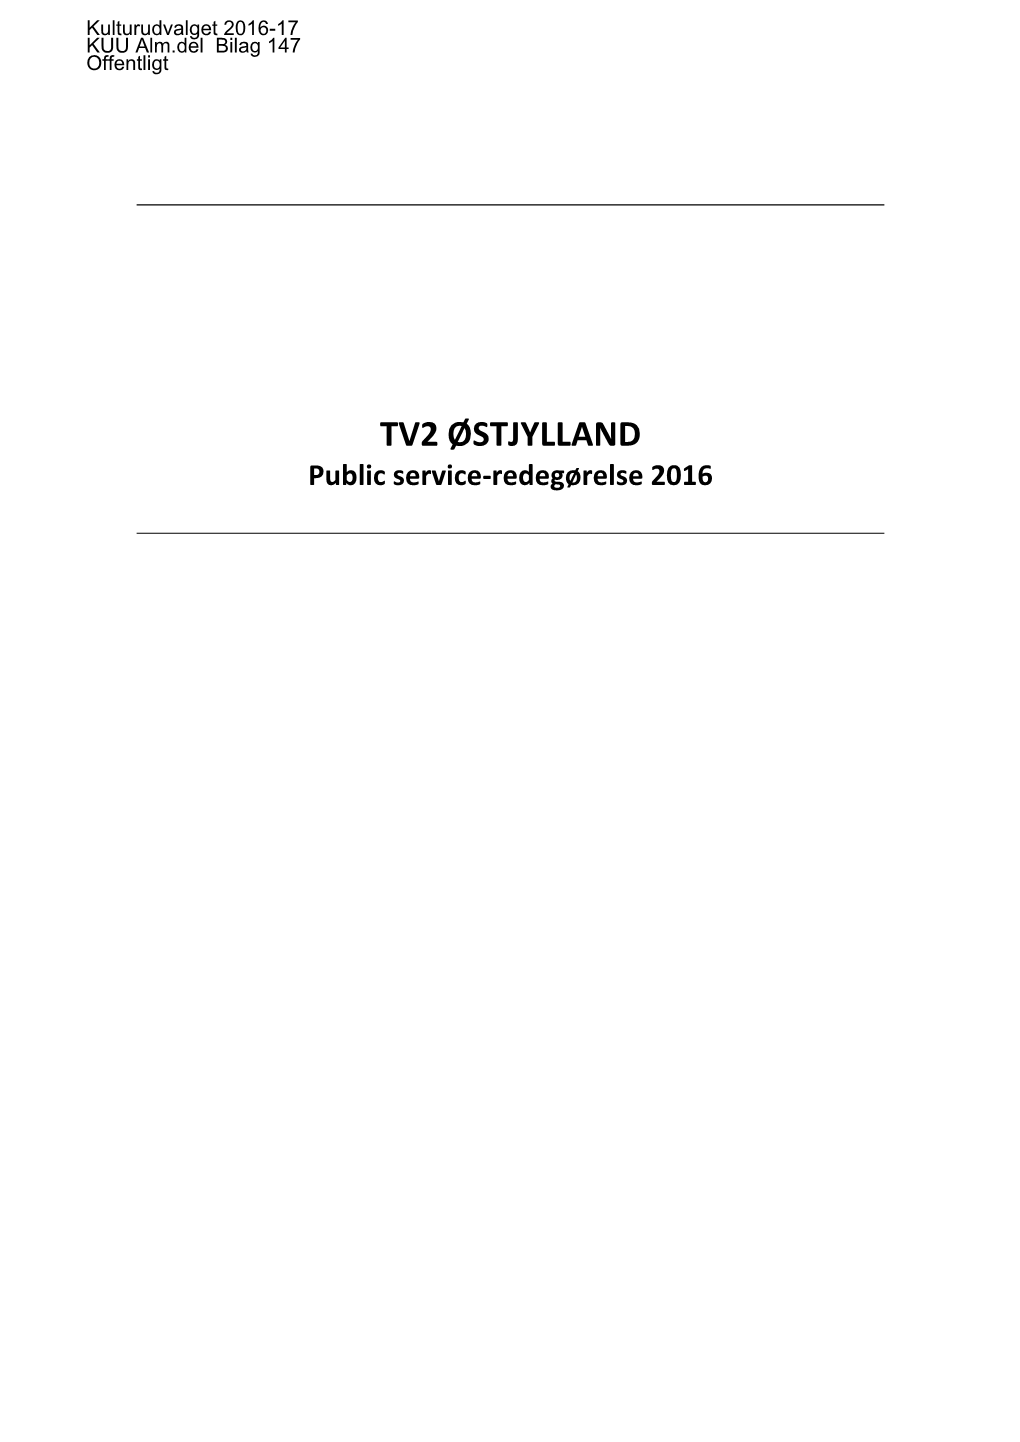 TV2 ØSTJYLLAND Public Service-Redegørelse 2016